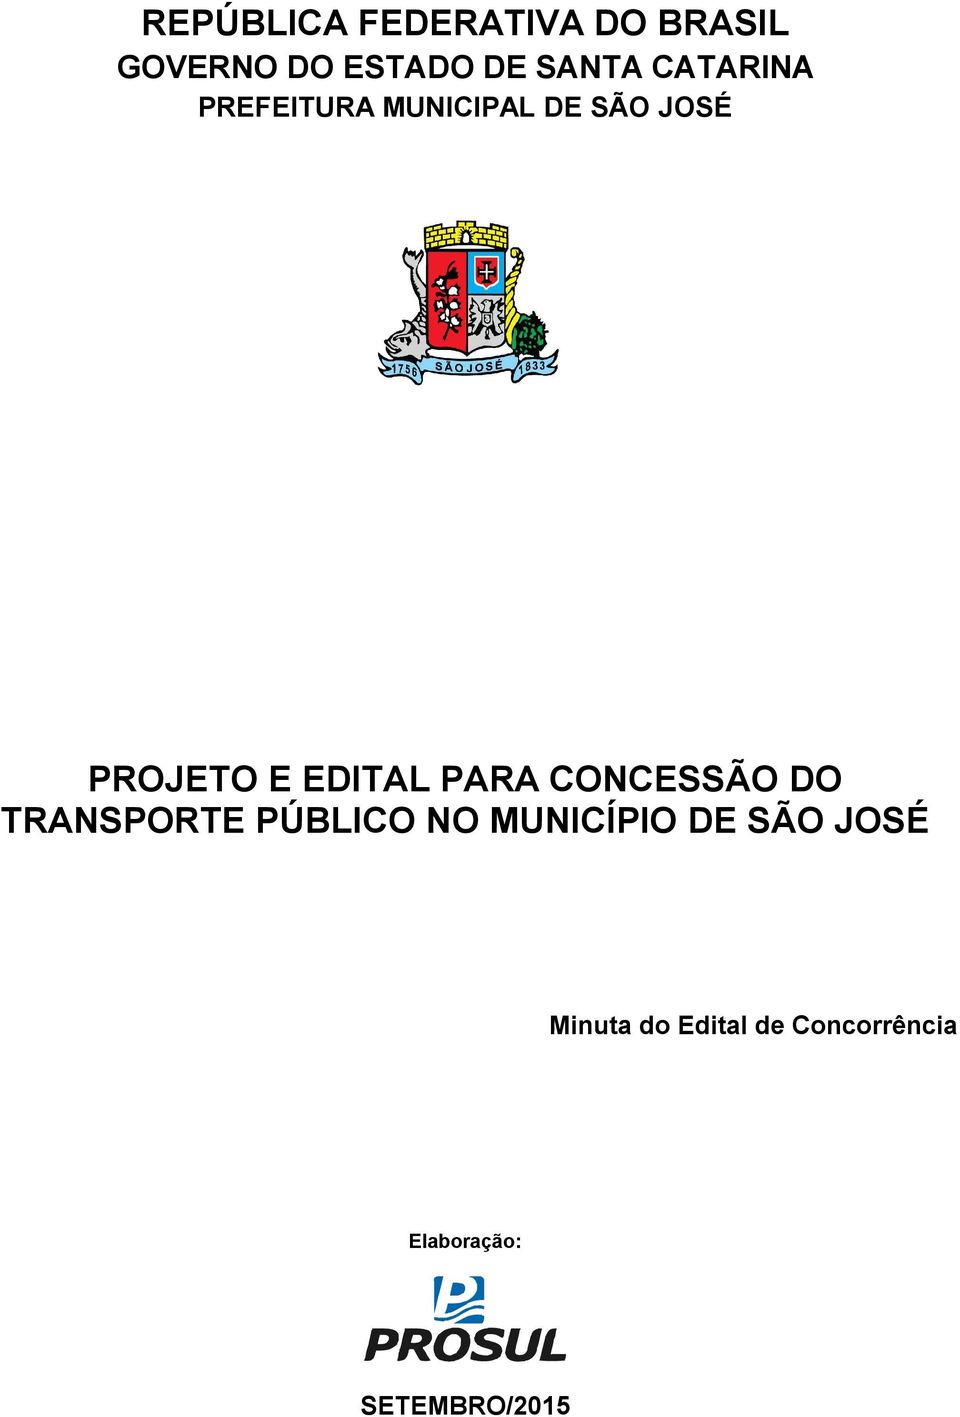 PARA CONCESSÃO DO TRANSPORTE PÚBLICO NO MUNICÍPIO DE SÃO